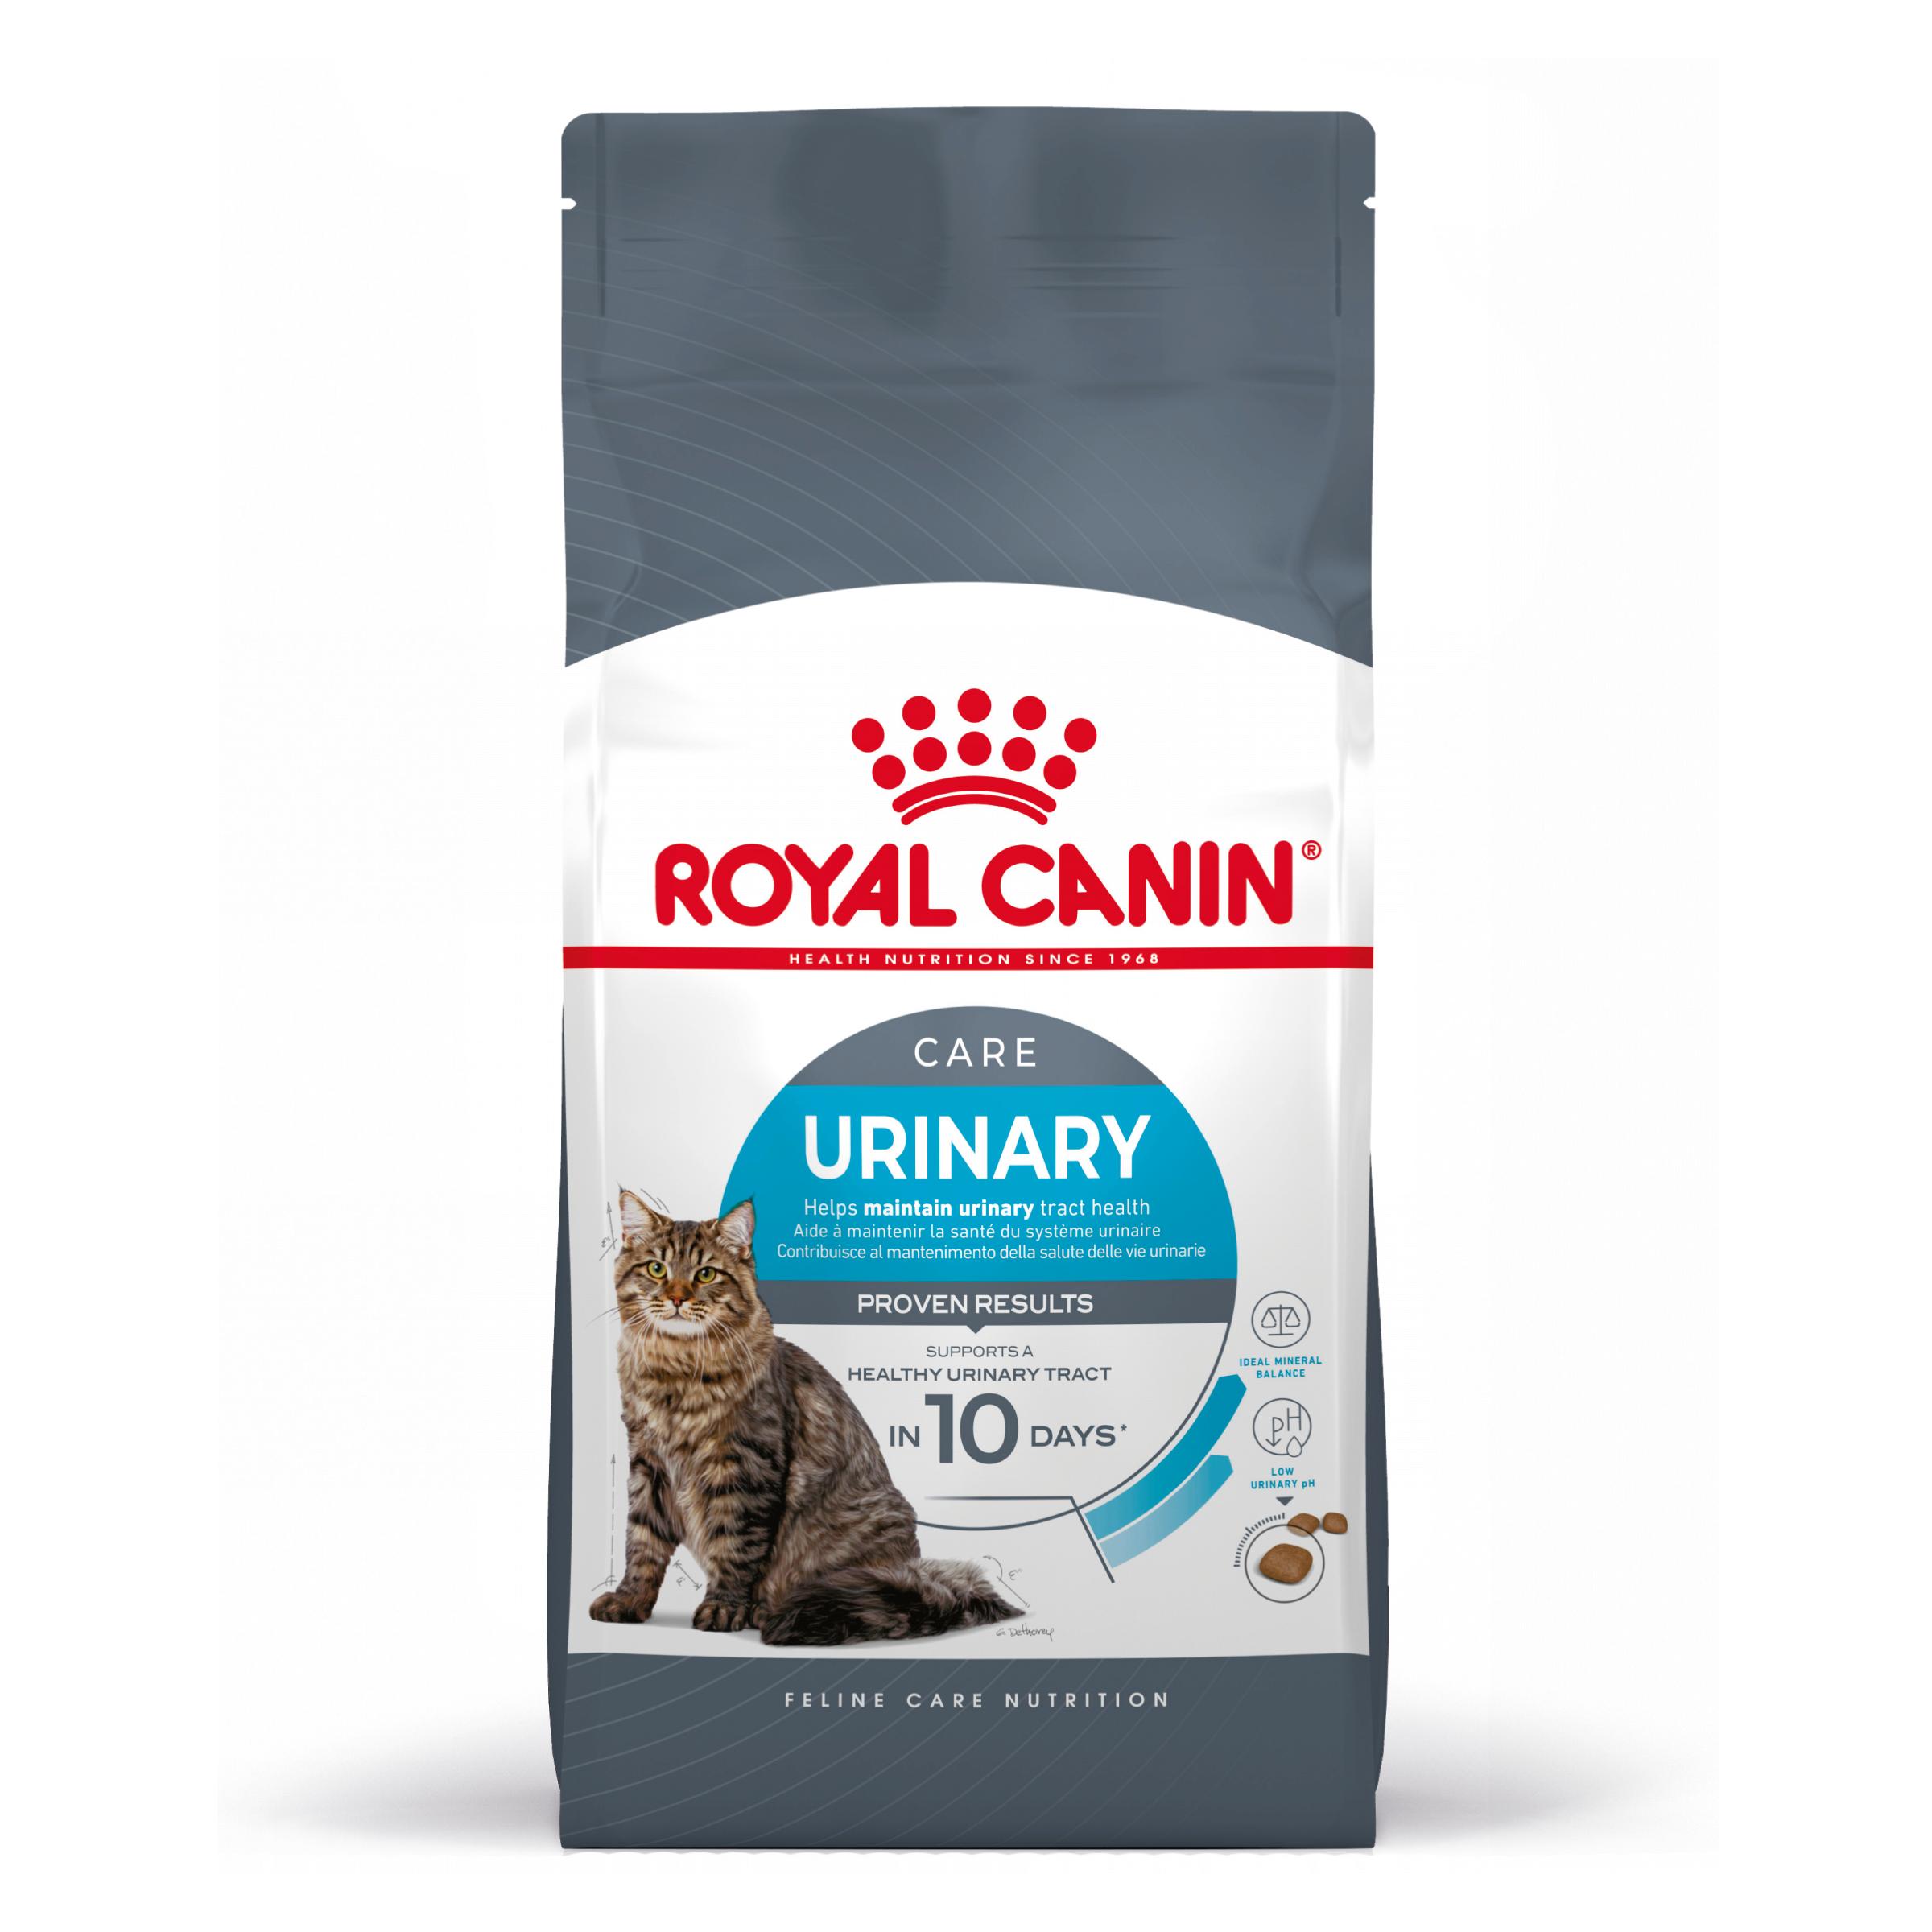 Royal Canin Urinary Care - Aliment pour chats adultes. - Recommandé pour aider à maintenir la santé du système urinaire - 2KG